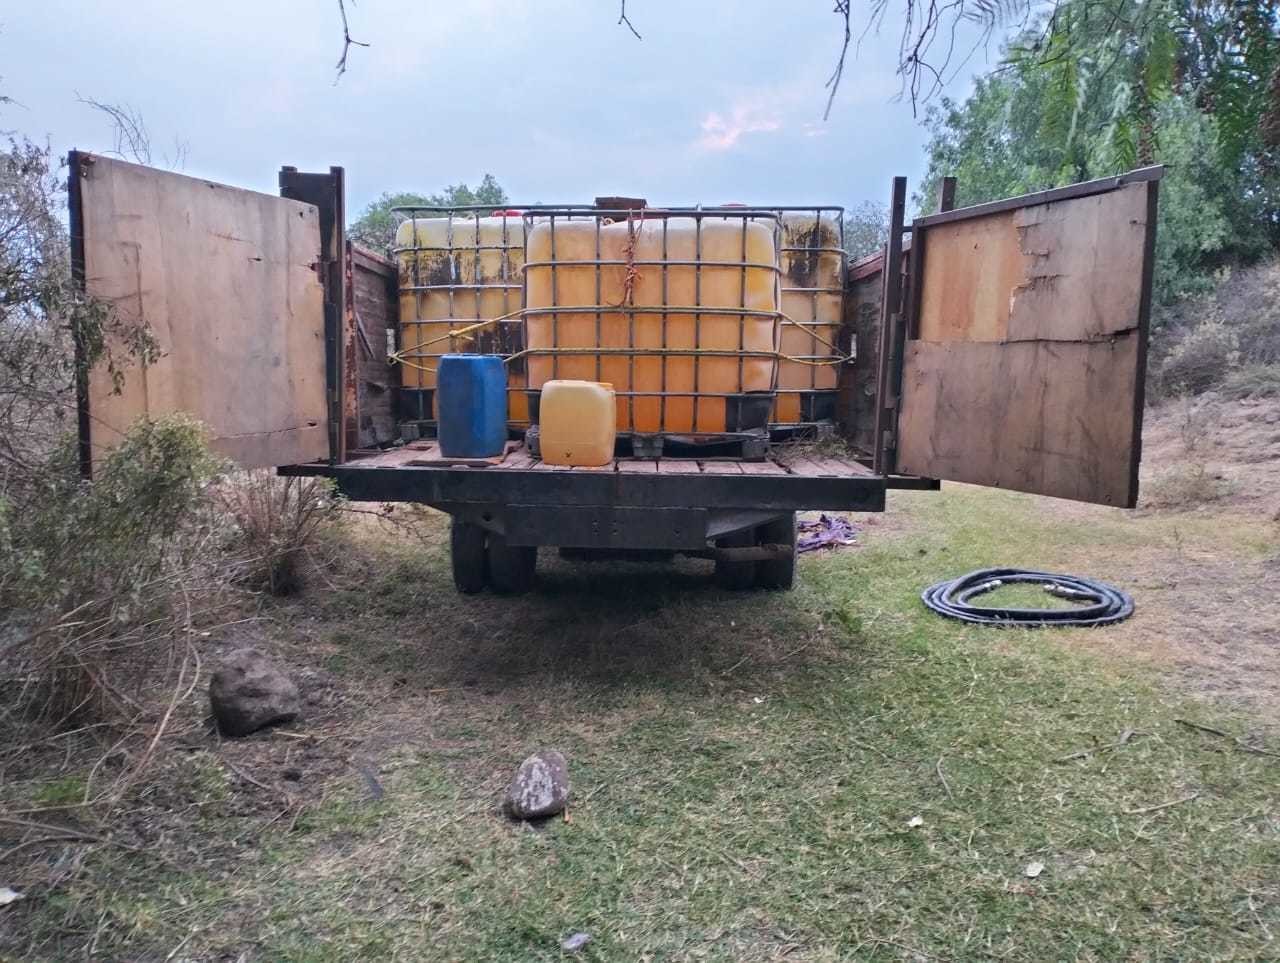 Asegura Guardia Nacional toma clandestina y camioneta en Tepetitlán, Hidalgo